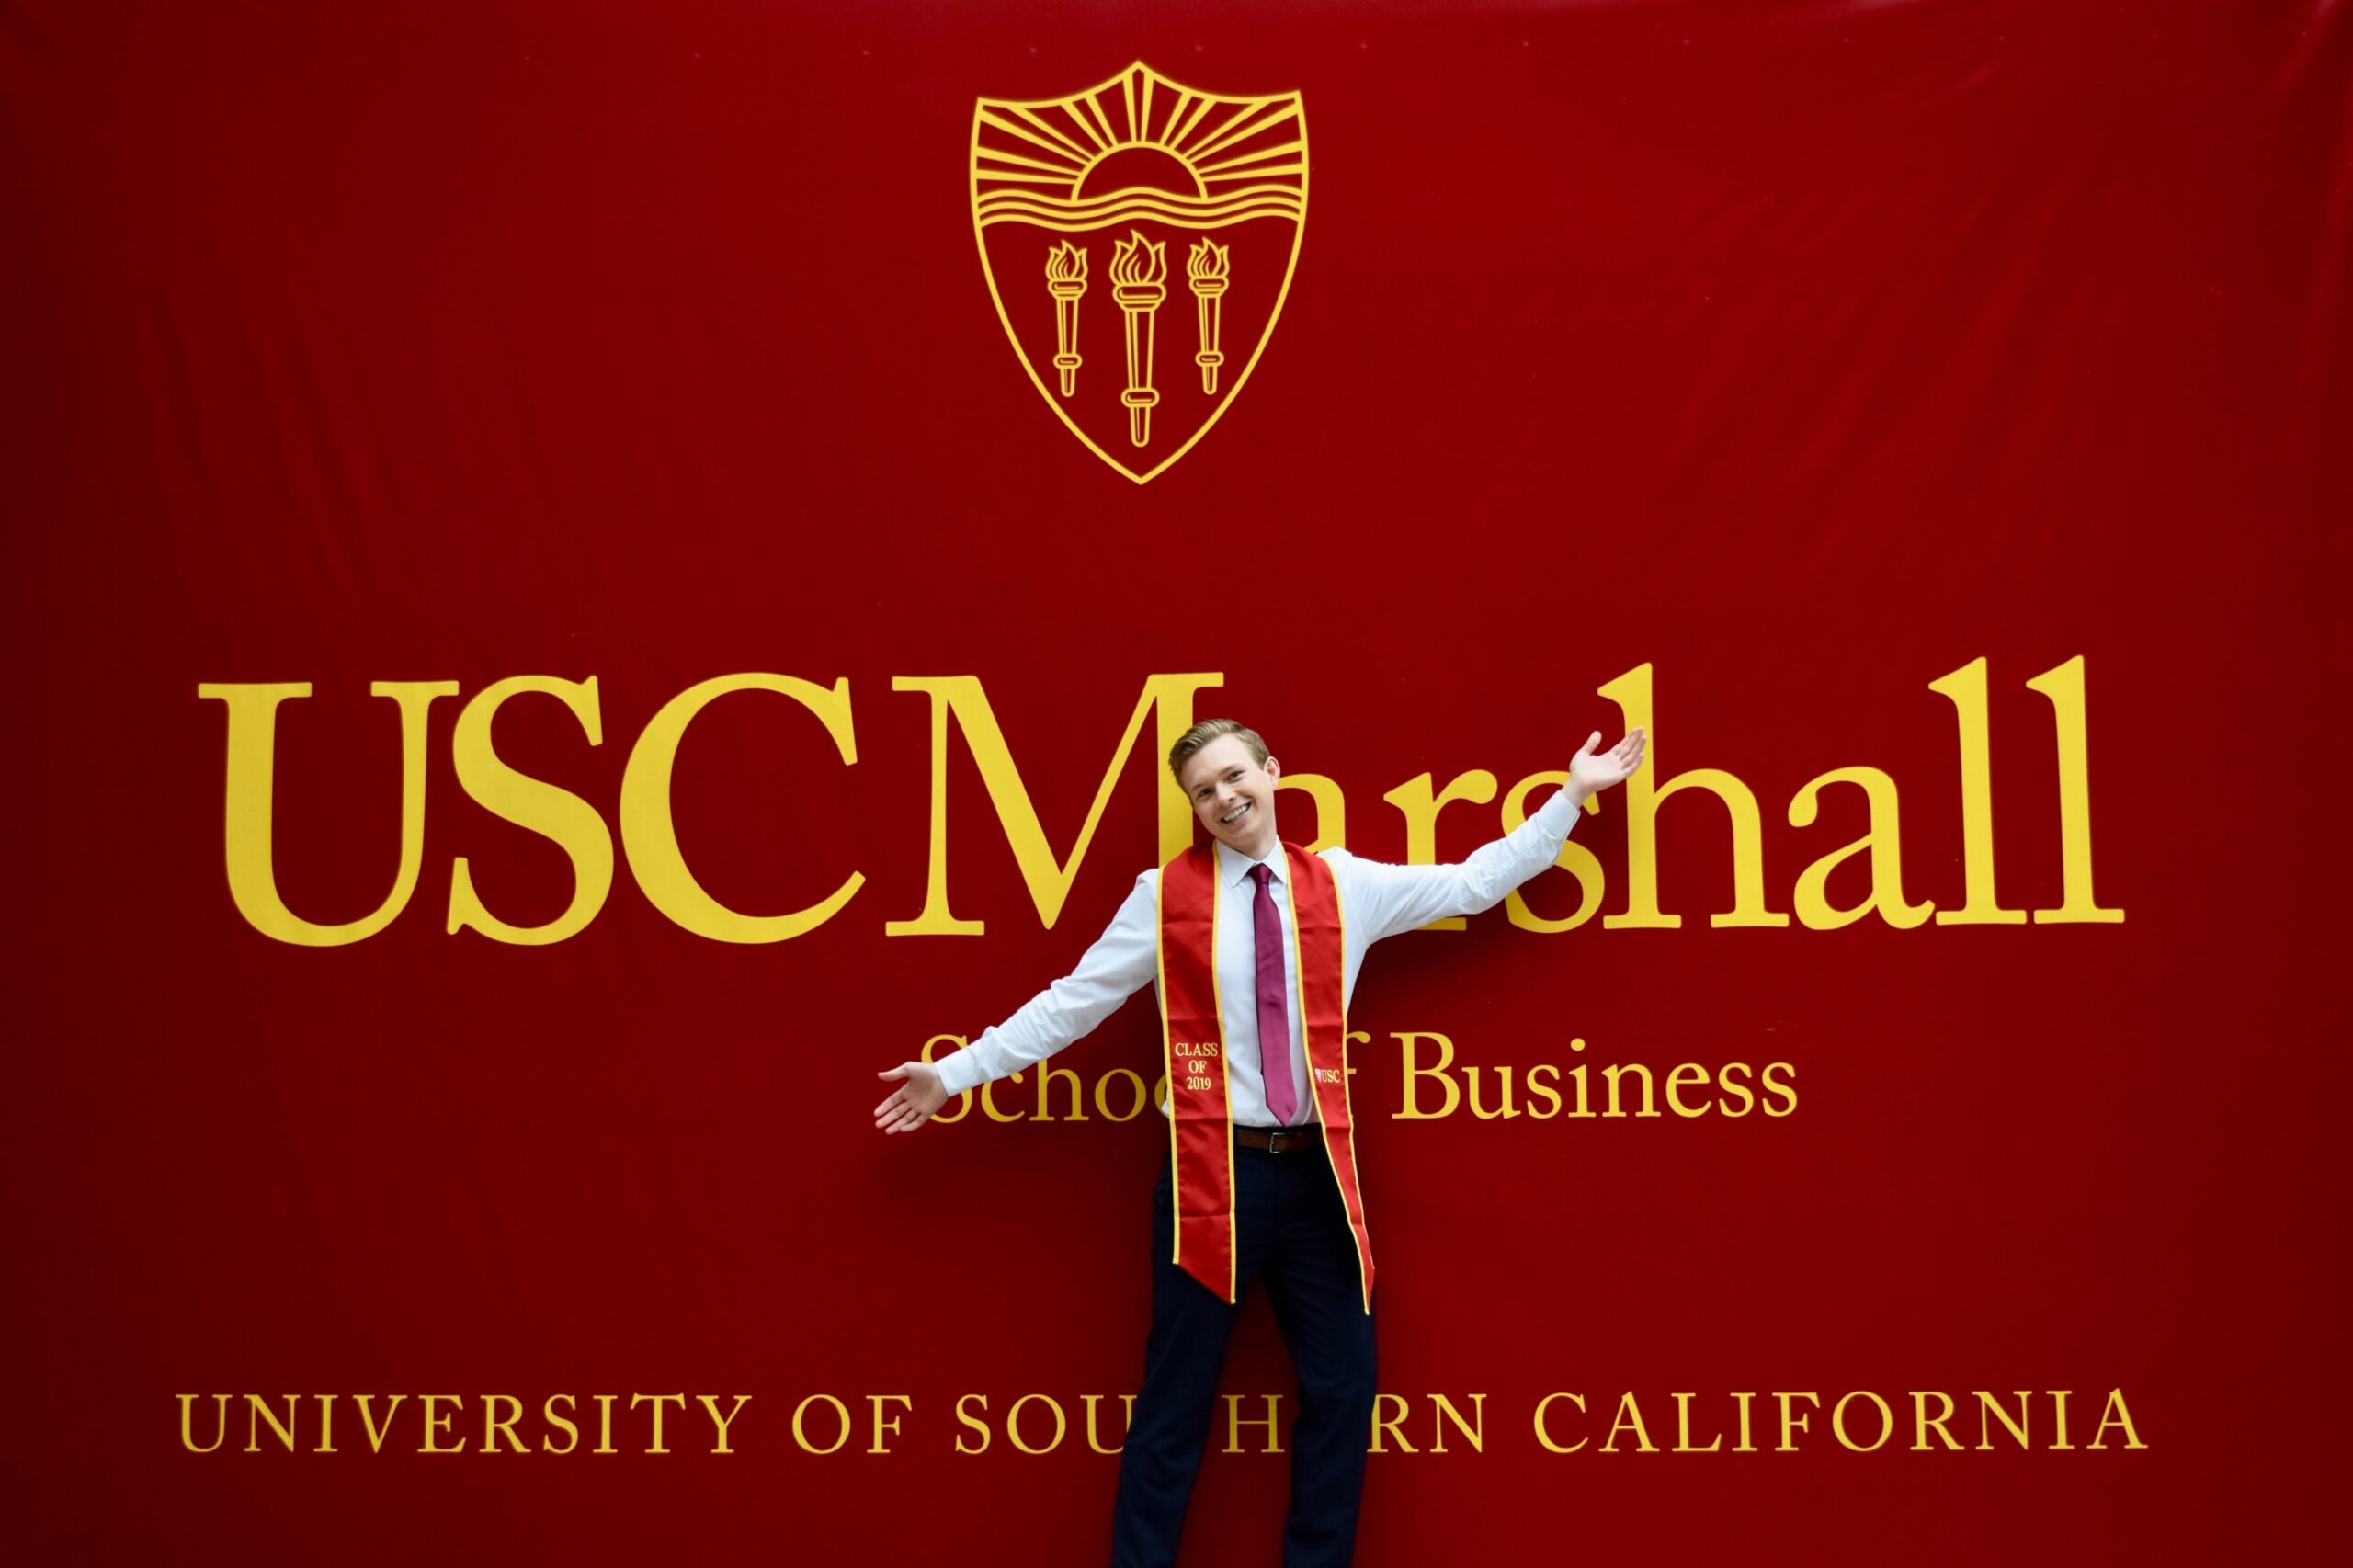 USC Business School